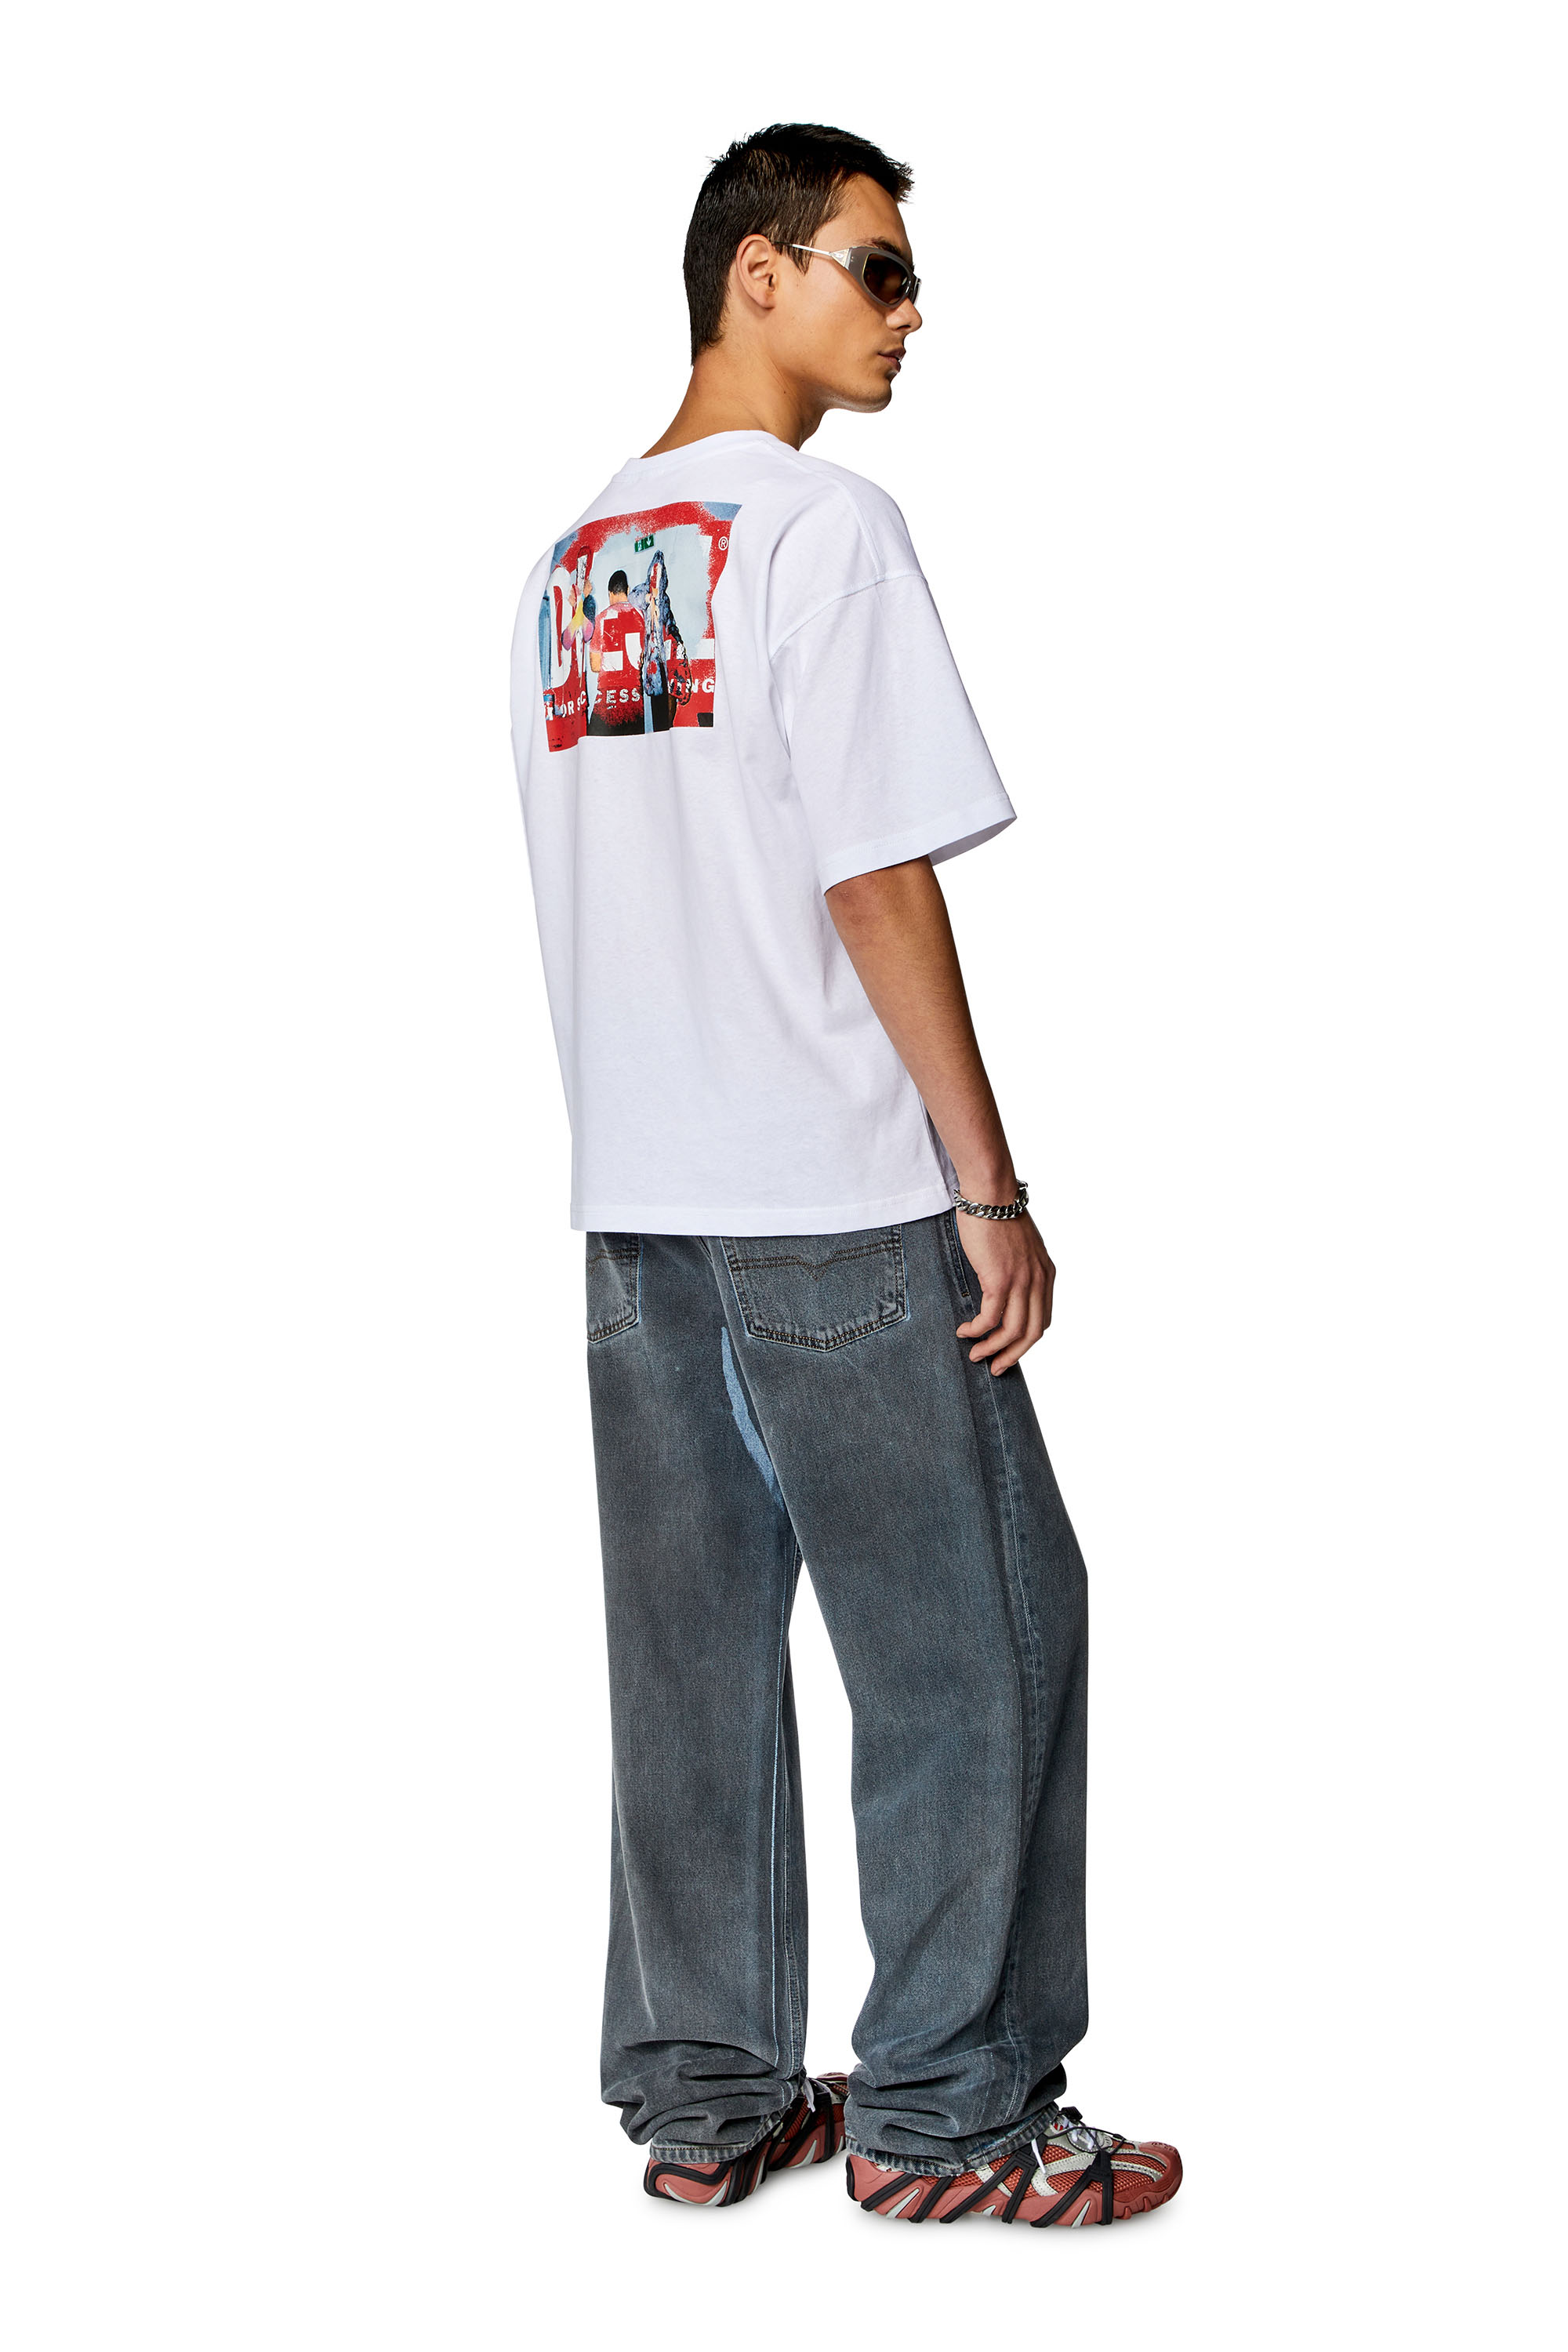 Diesel - T-BOXT-N11, Homme T-shirt avec logo imprimé photo in Blanc - Image 3